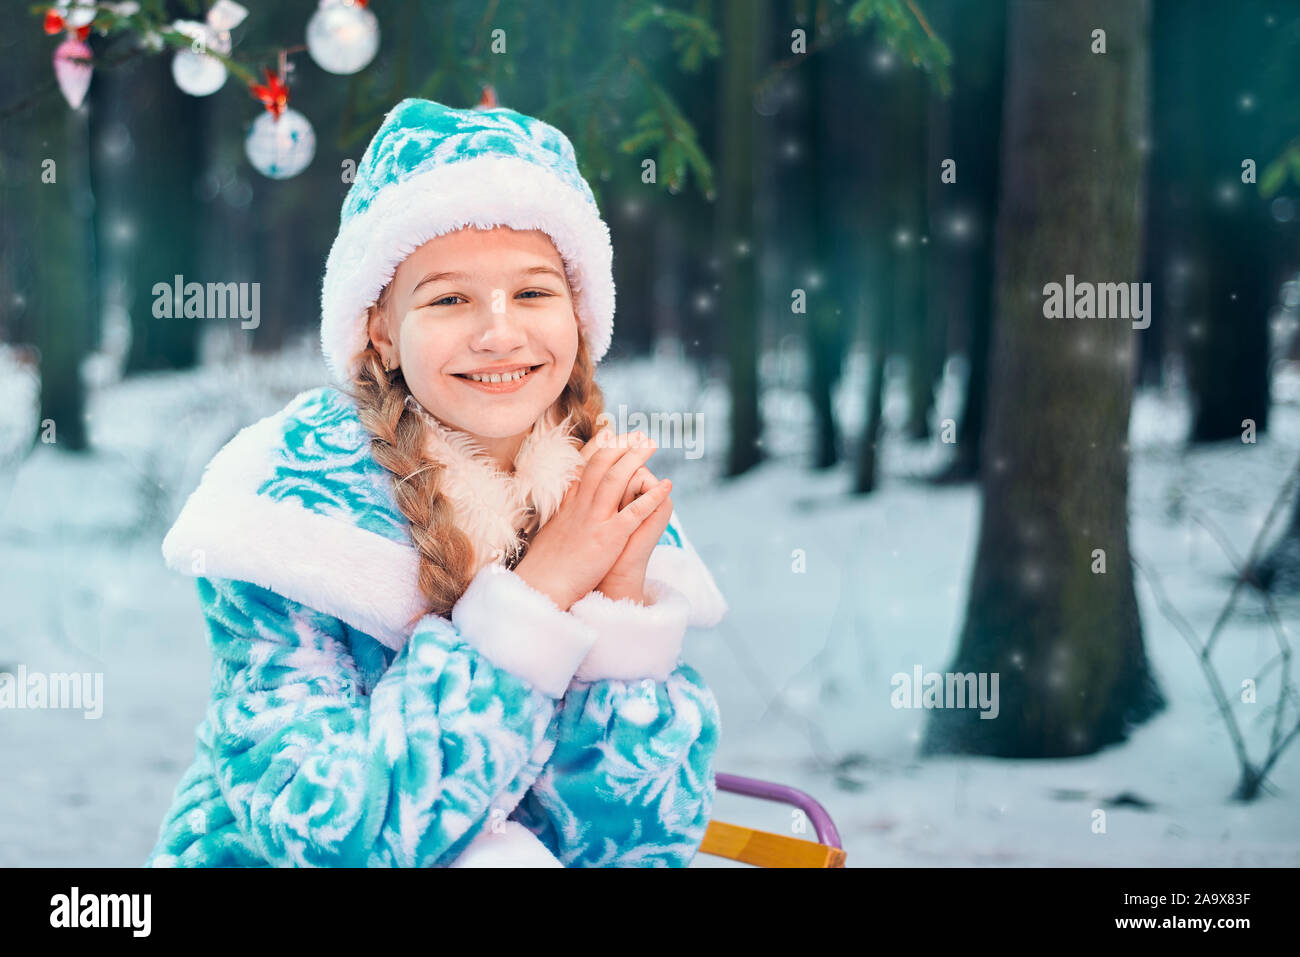 Histoire de Noël. happy little girl smiling près de l'arbre de Noël avec des jouets Banque D'Images